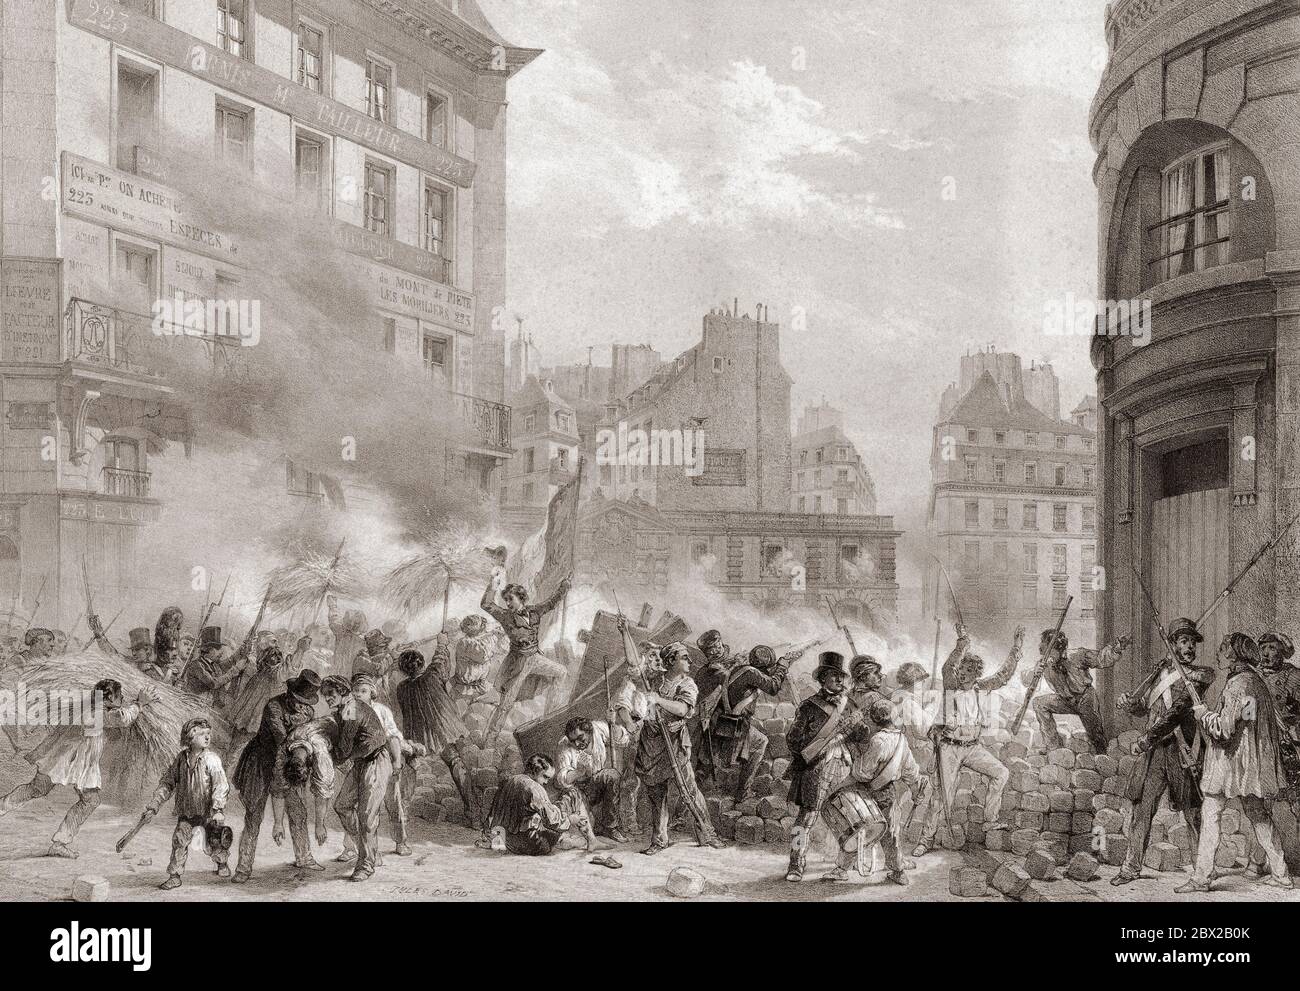 Die Revolution von 1848 oder Februarrevolution, Frankreich. Revolutionäre belagern das Chateau d'Eau auf dem Place du Palais-Royal. Nach einem zeitgenössischen Druck von Jules David. Stockfoto